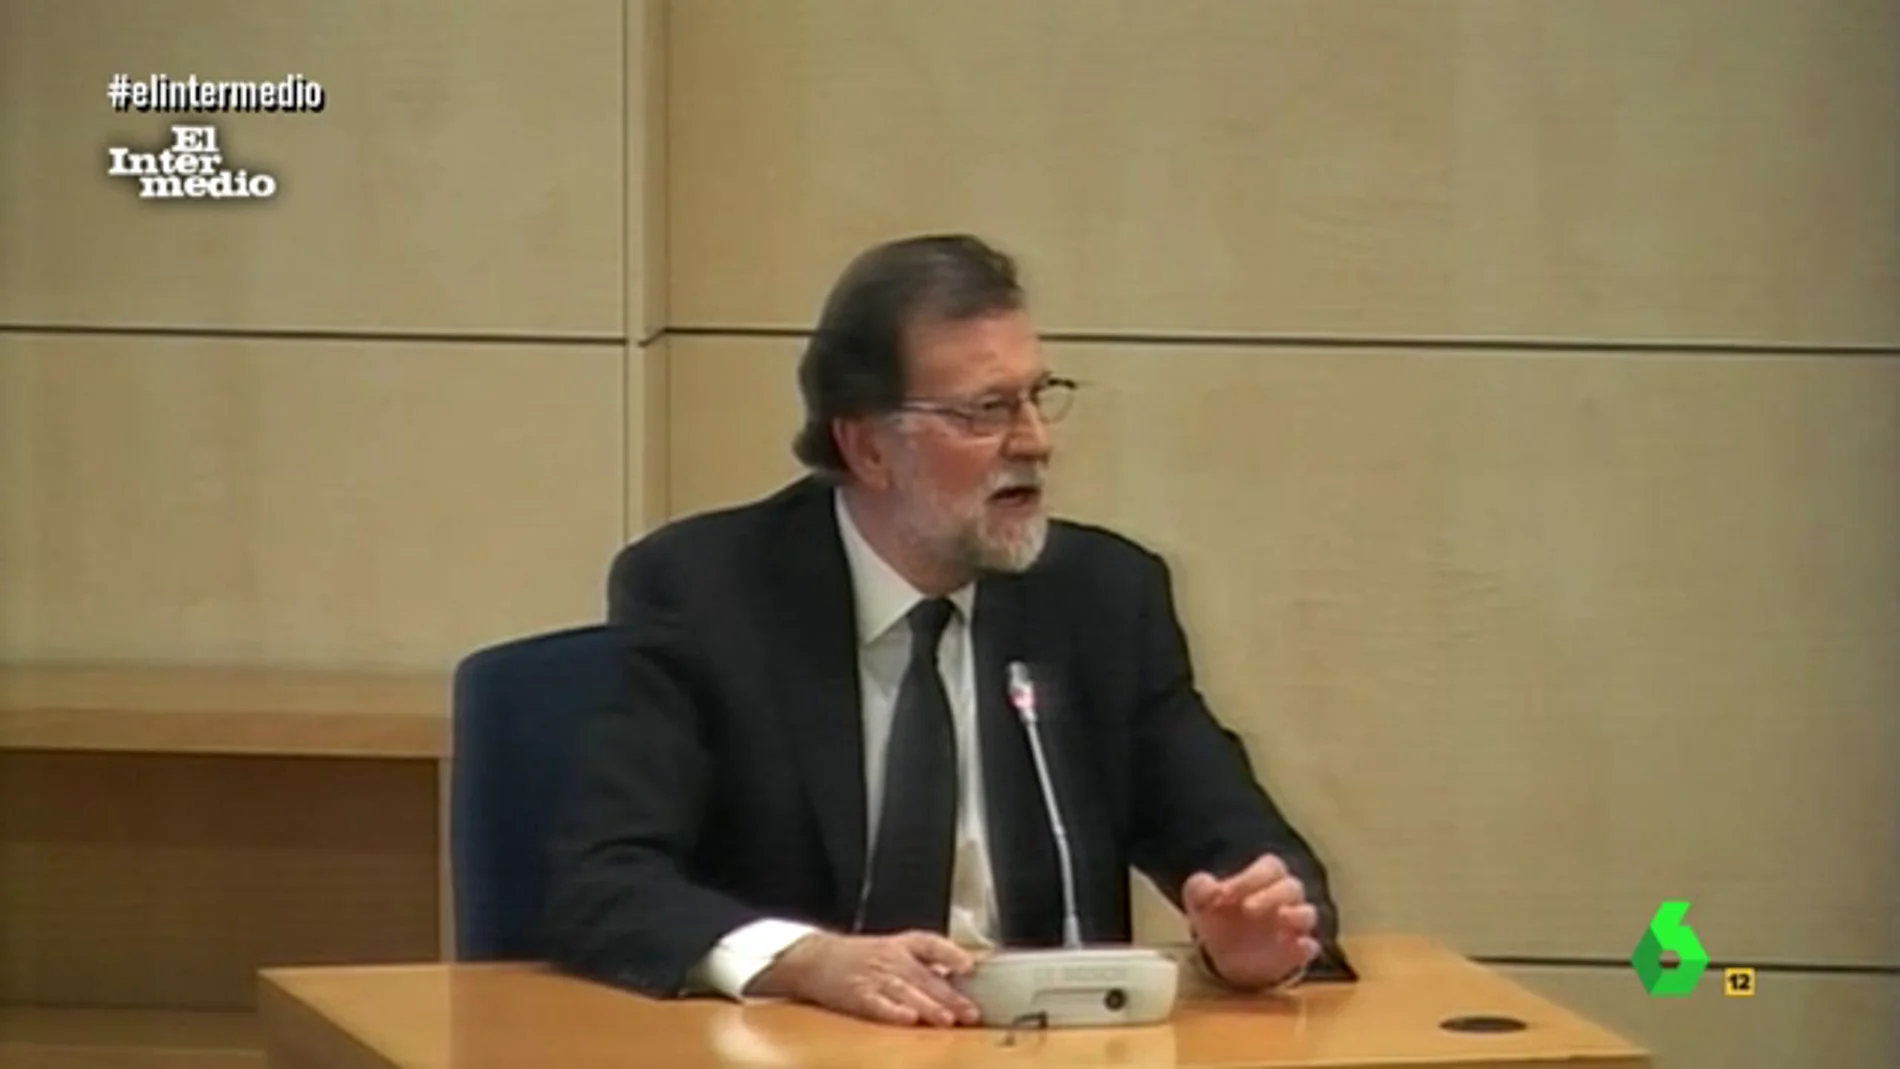 Mariano Rajoy confiesa que nunca se ha masturbado: "Sería ilegal"